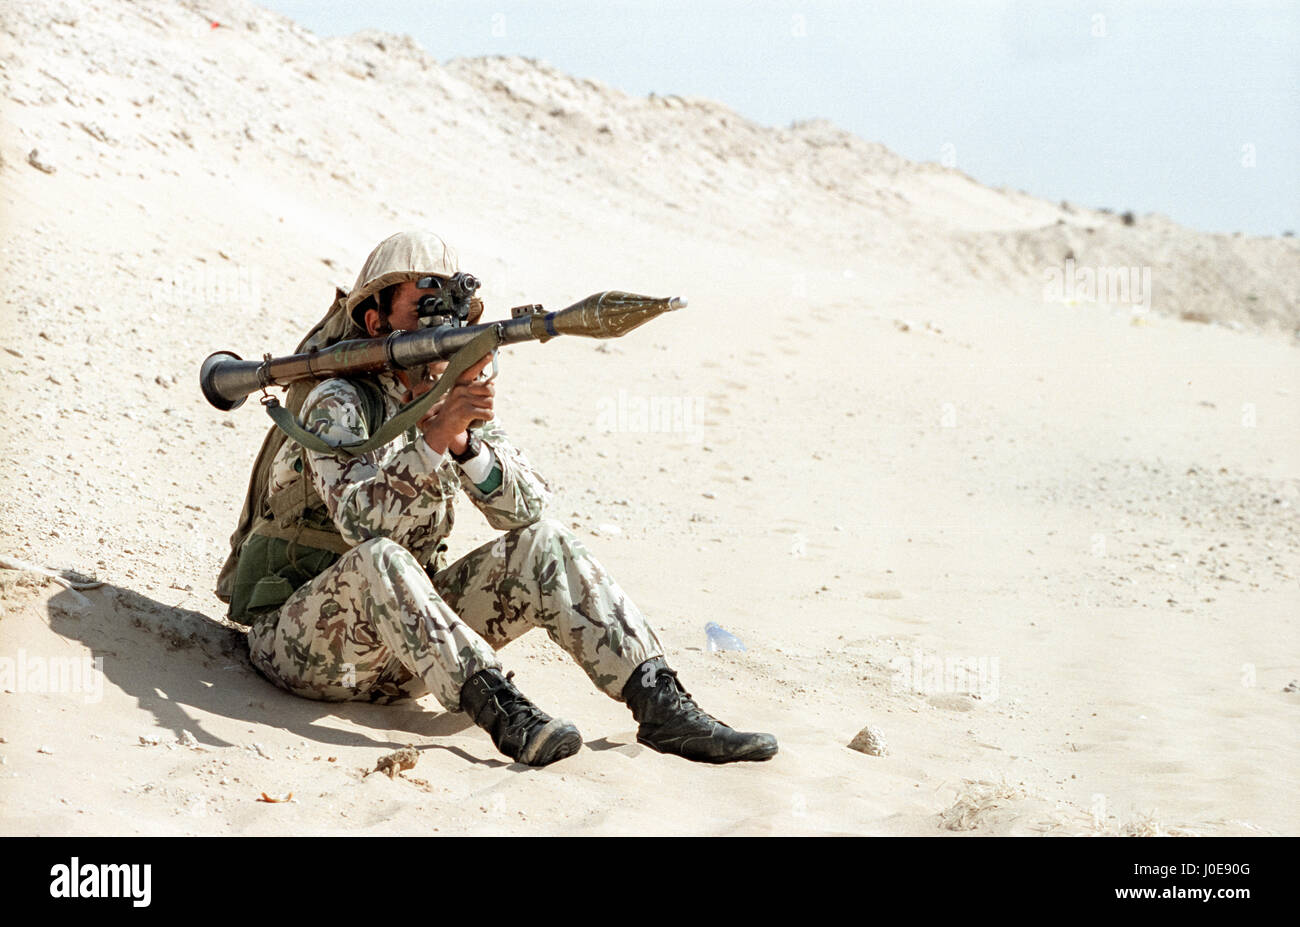 Un soldato egiziano di pattuglie sabbia berm segna il confine del Kuwait e Arabia Saudita con un razzo a propulsione granata Febbraio 8, 1991 in Ruqa, Arabia Saudita. I soldati egiziani sono parte della coalizione di nazioni in Operazione Desert Storm per liberare il Kuwait dall'occupazione irachena. Foto Stock